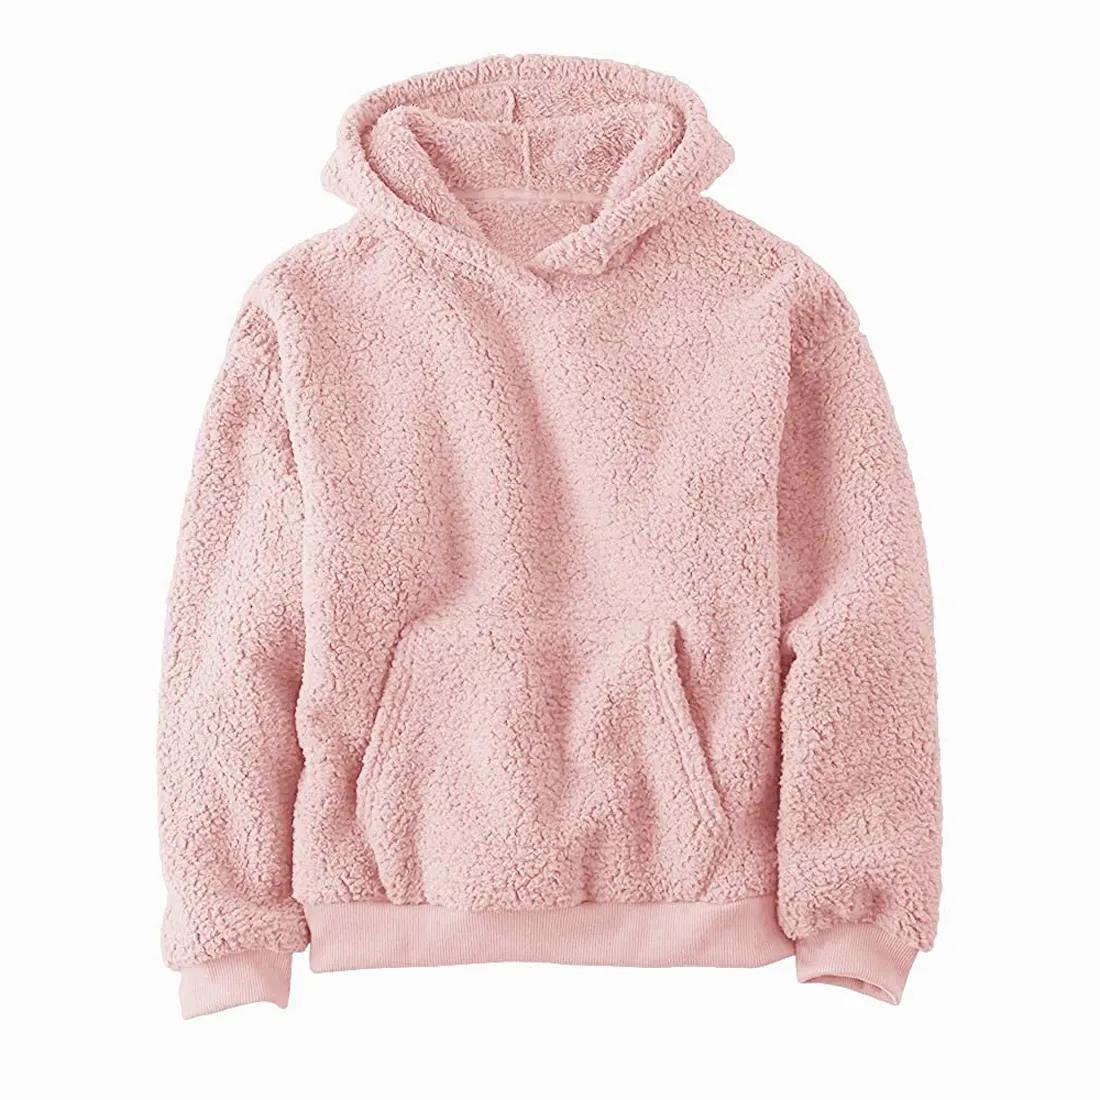 Bergaya Pullover Sherpa hoodie untuk pria ukuran besar warna merah muda saku kanguru pakaian musim dingin kaus